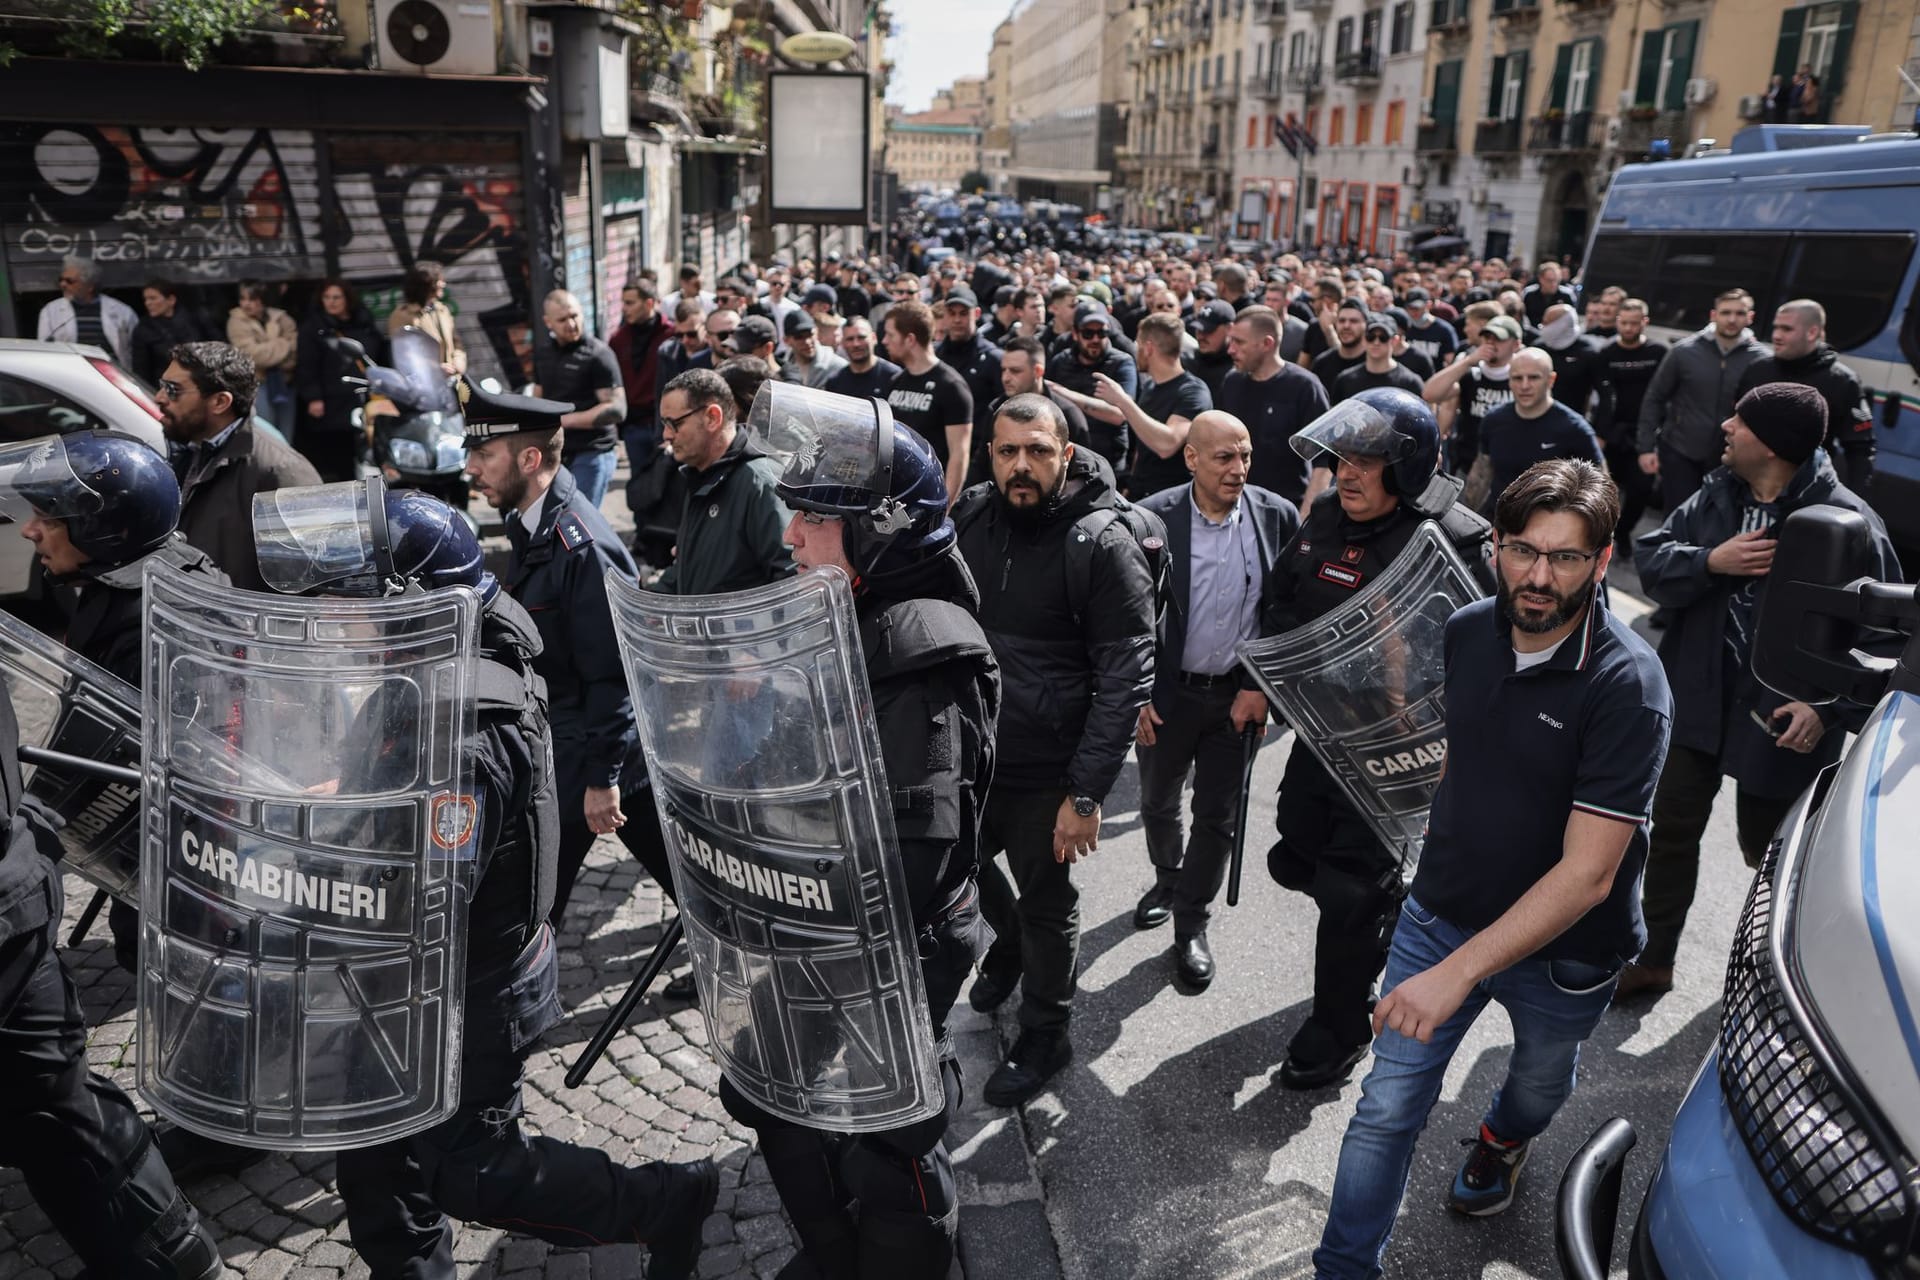 Die Carabinieri, also die Gendarmerie Italiens war mit Schutzschildern unterwegs: Die Polizisten eskortierten auf diese Weise Fans von Eintracht Frankfurt durch die Innenstadt.